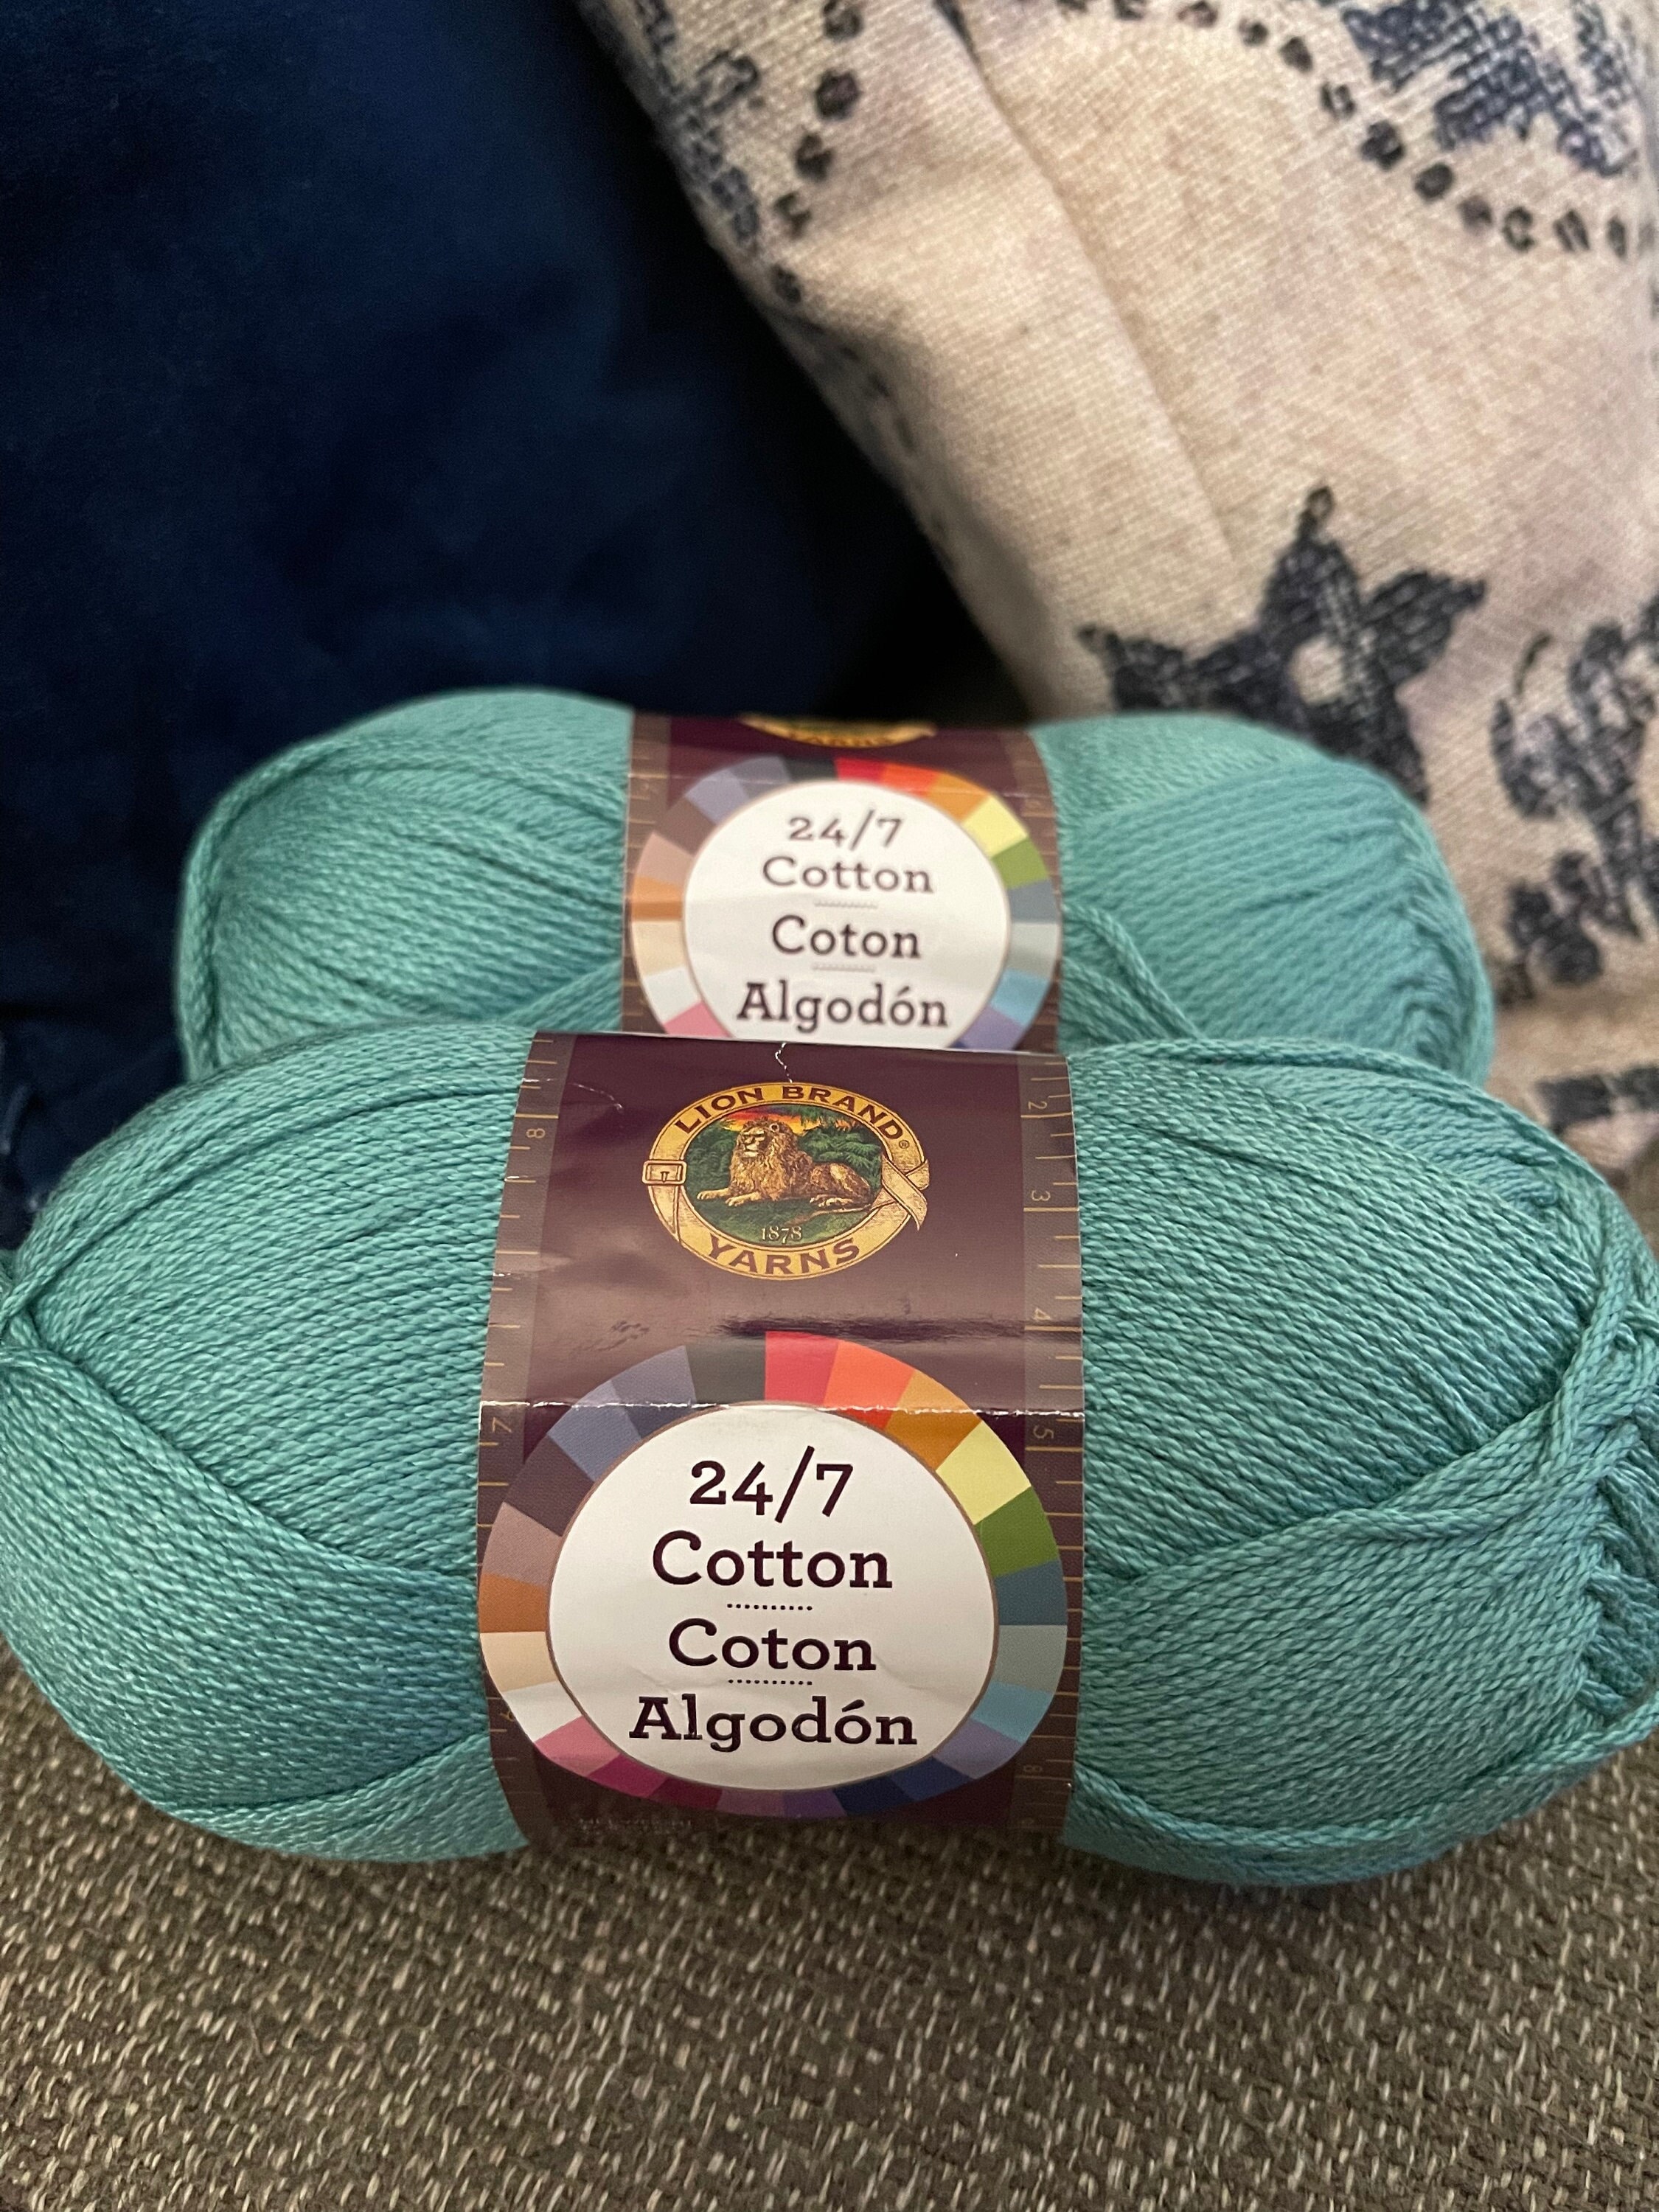 1 Skein) 24/7 Cotton® Yarn, Grass